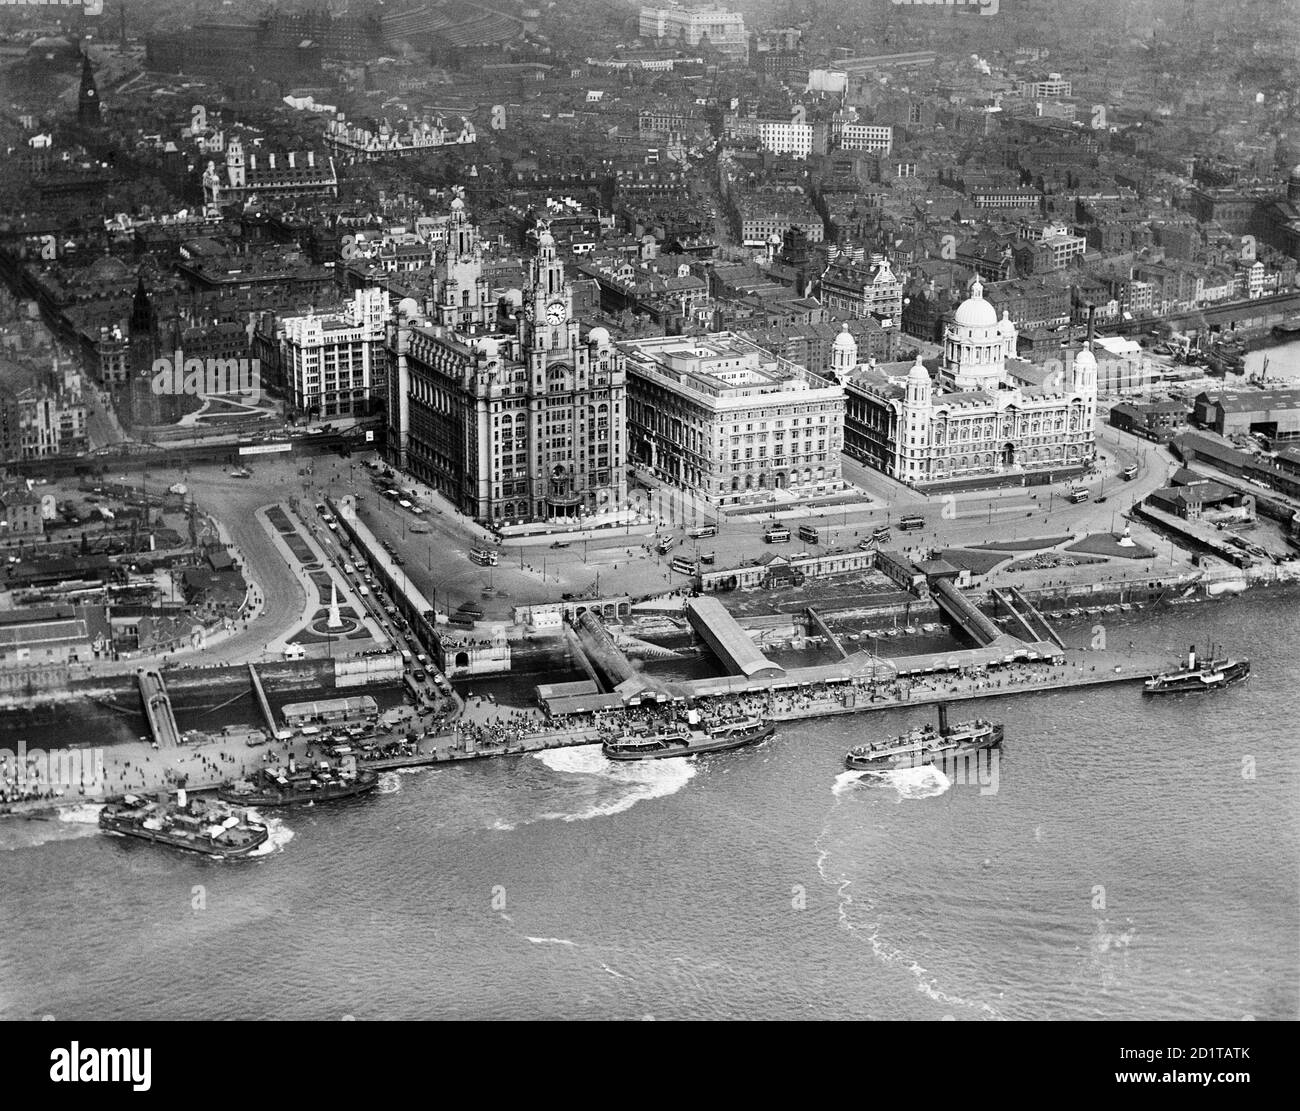 LIVERPOOL, Merseyside. Vista aérea de Liverpool Pier Head con numerosos transbordadores y pequeños barcos. Fotografiado en 1920. Colección Aerofilms (ver Enlaces). Foto de stock